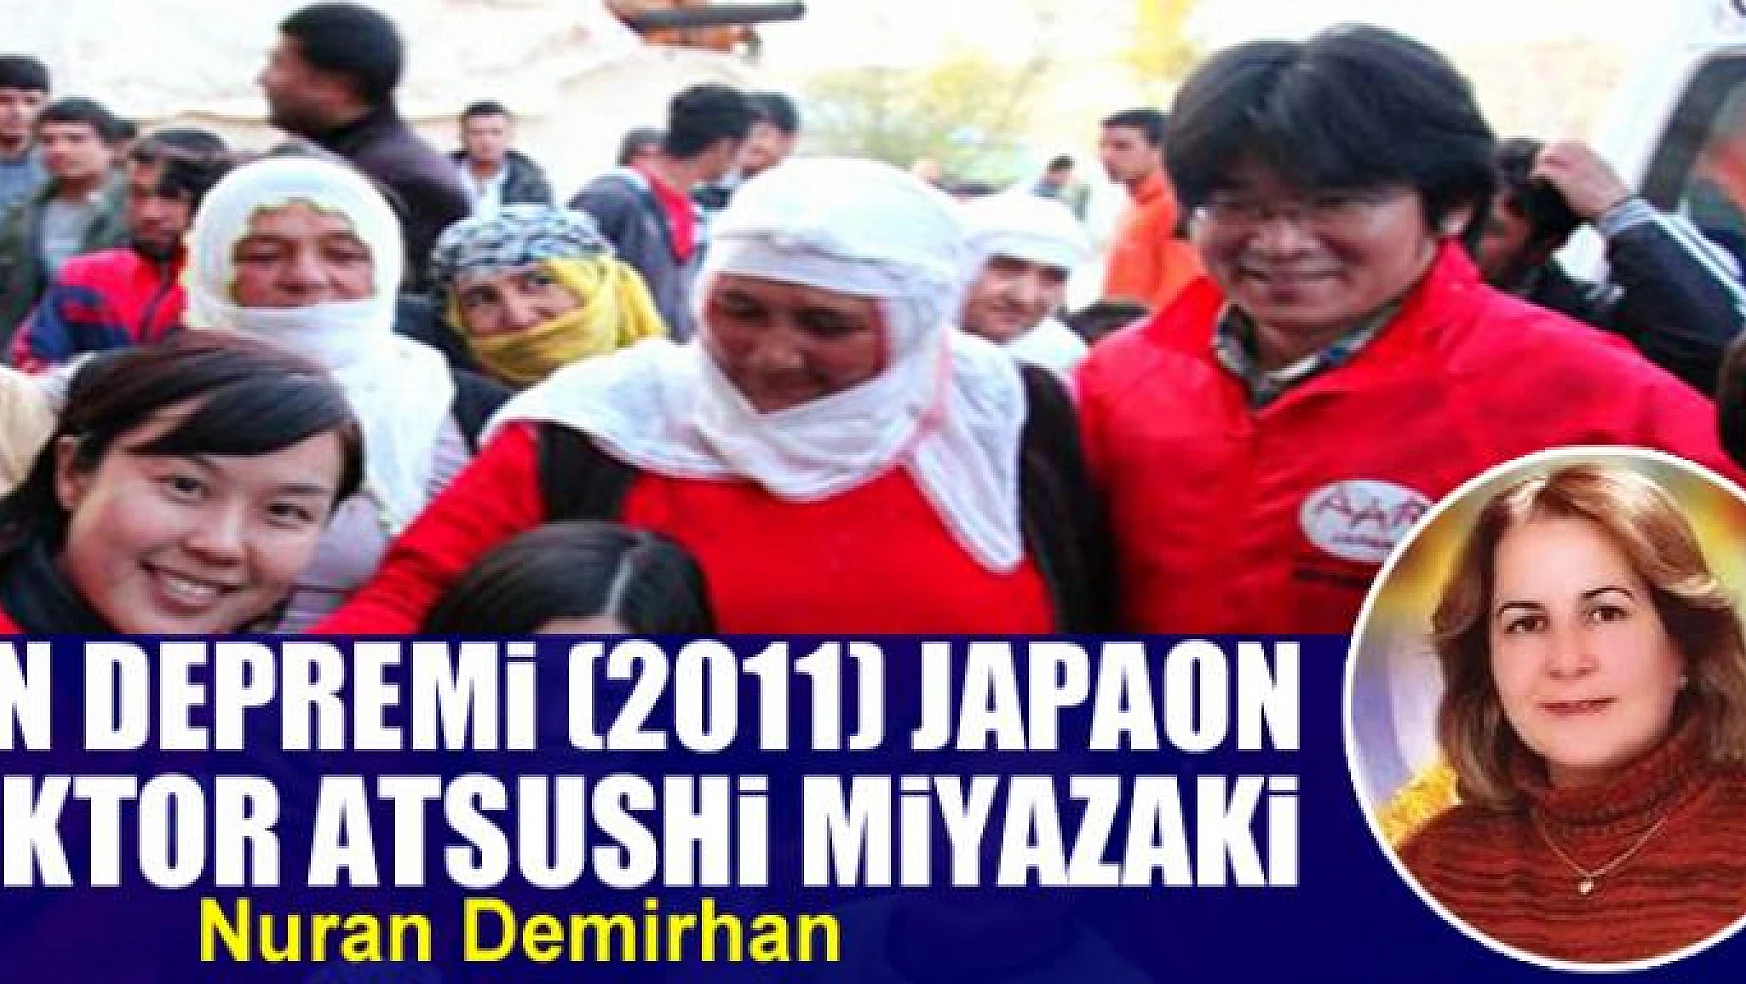 Van Depremi (2011) Japaon Doktor Atsushi Miyazaki